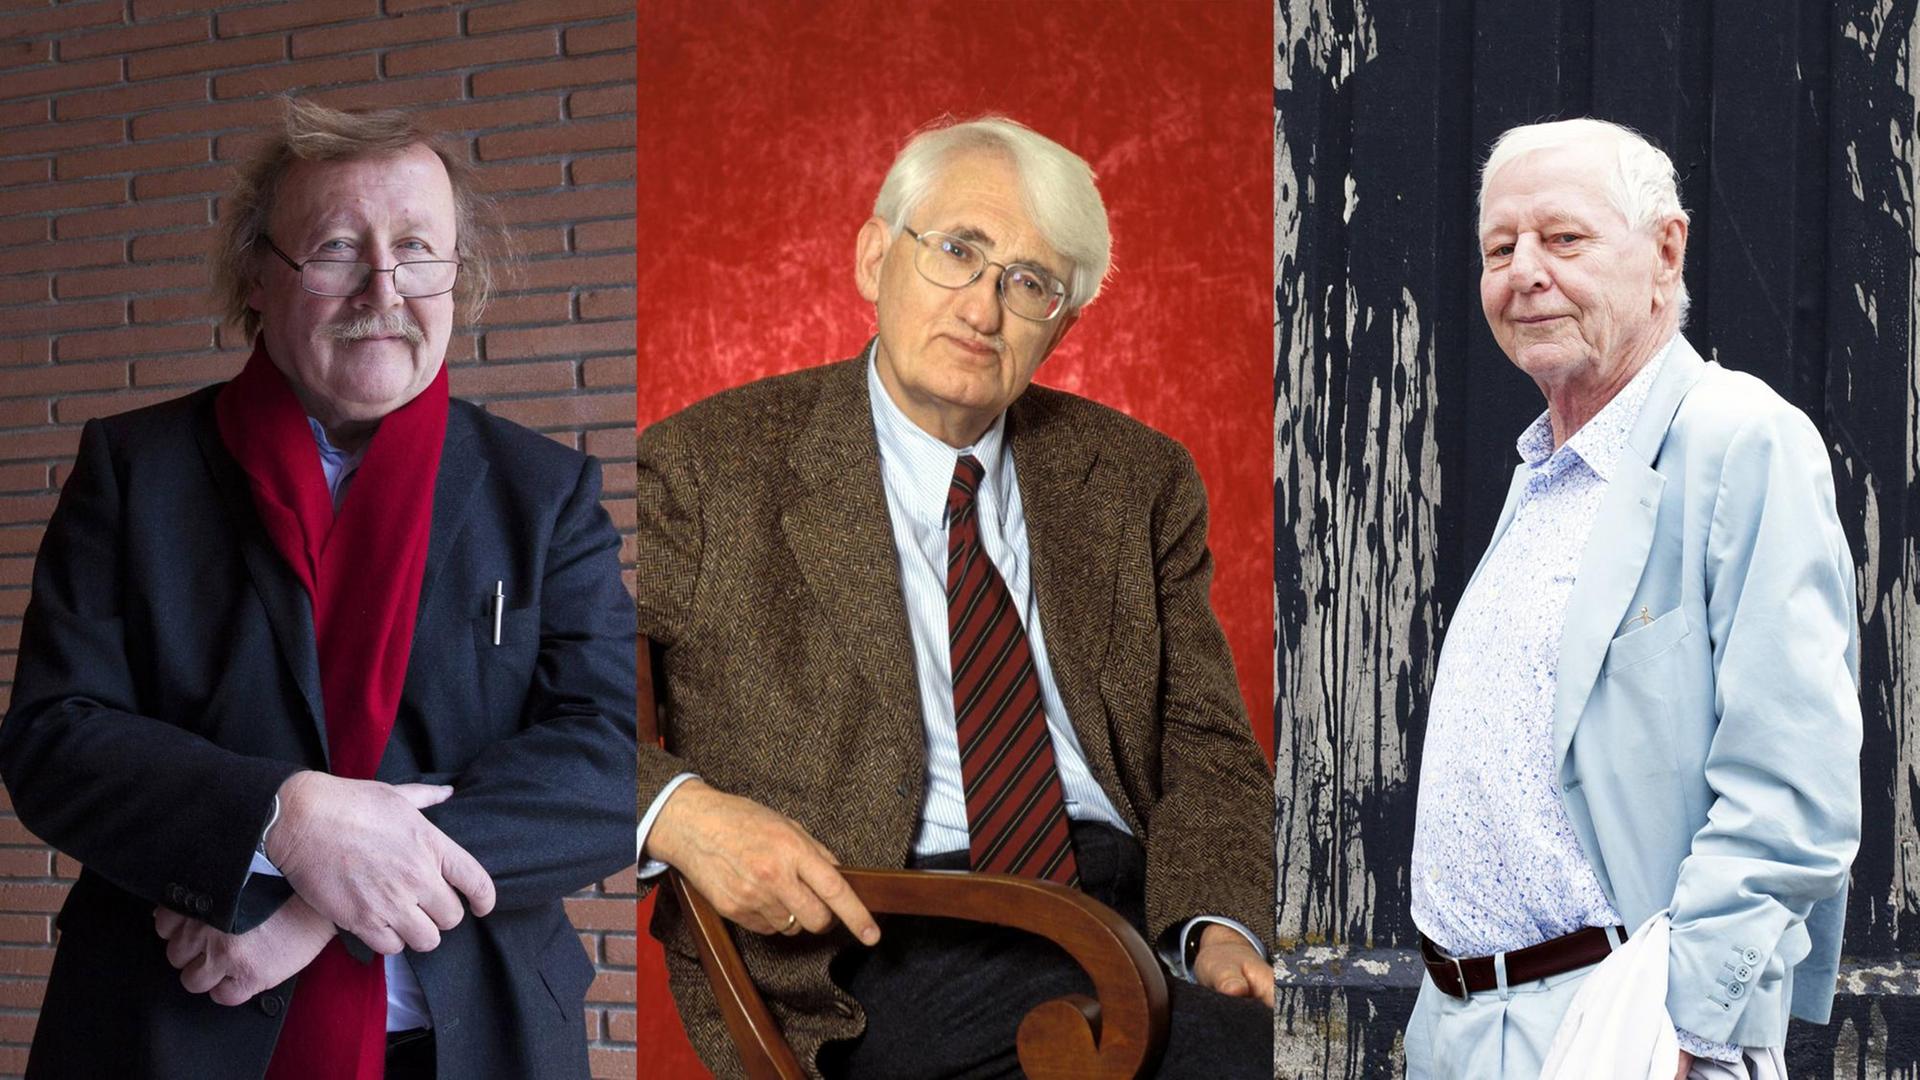 Porträts von Peter Sloterdijk, Jürgen Habermas. Hans Magnus Enzensberger.